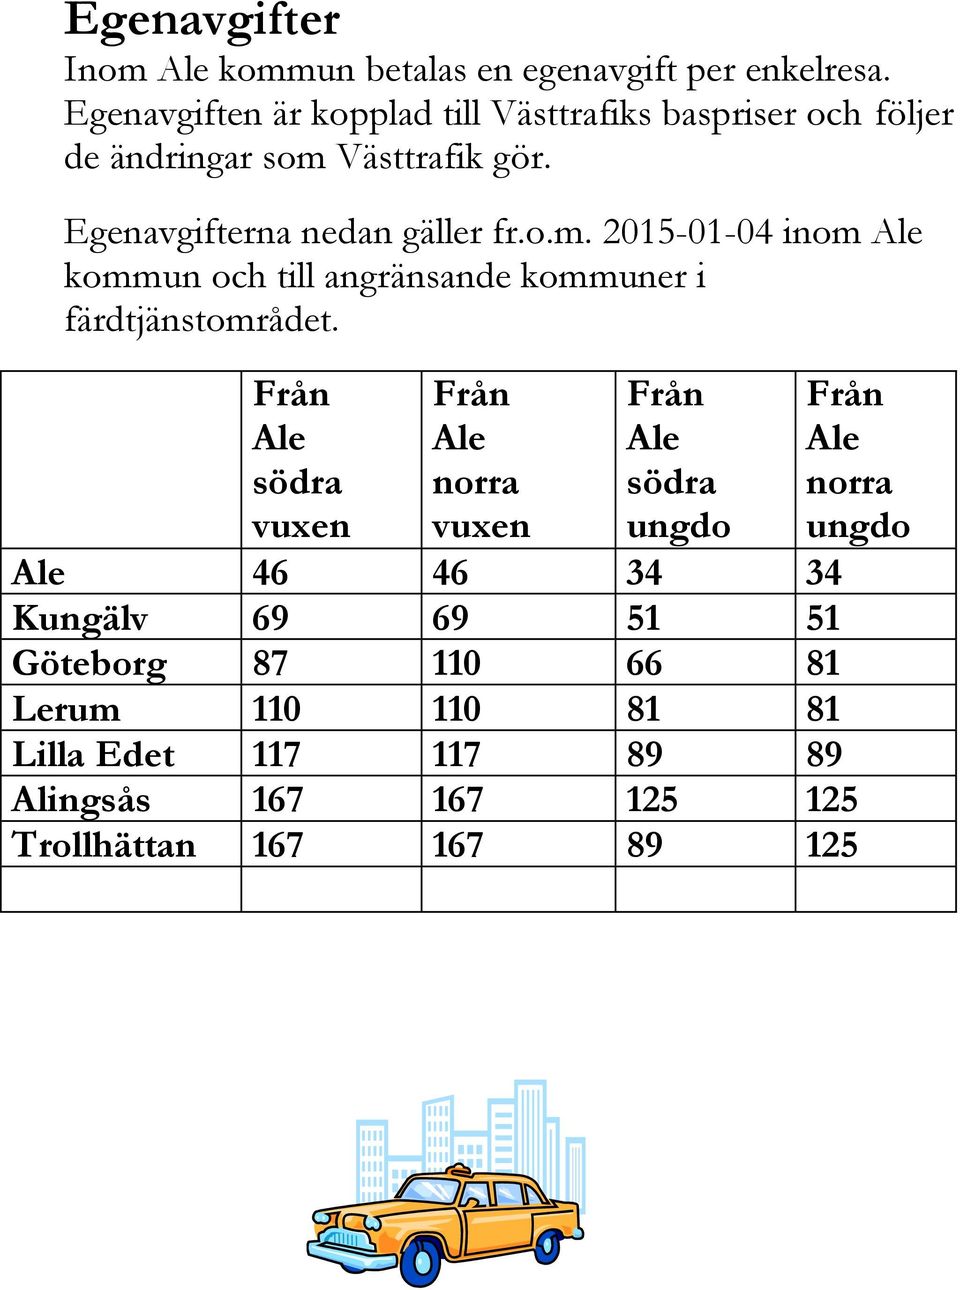 Västtrafik gör. Egenavgifterna nedan gäller fr.o.m. 2015-01-04 inom Ale kommun och till angränsande kommuner i färdtjänstområdet.